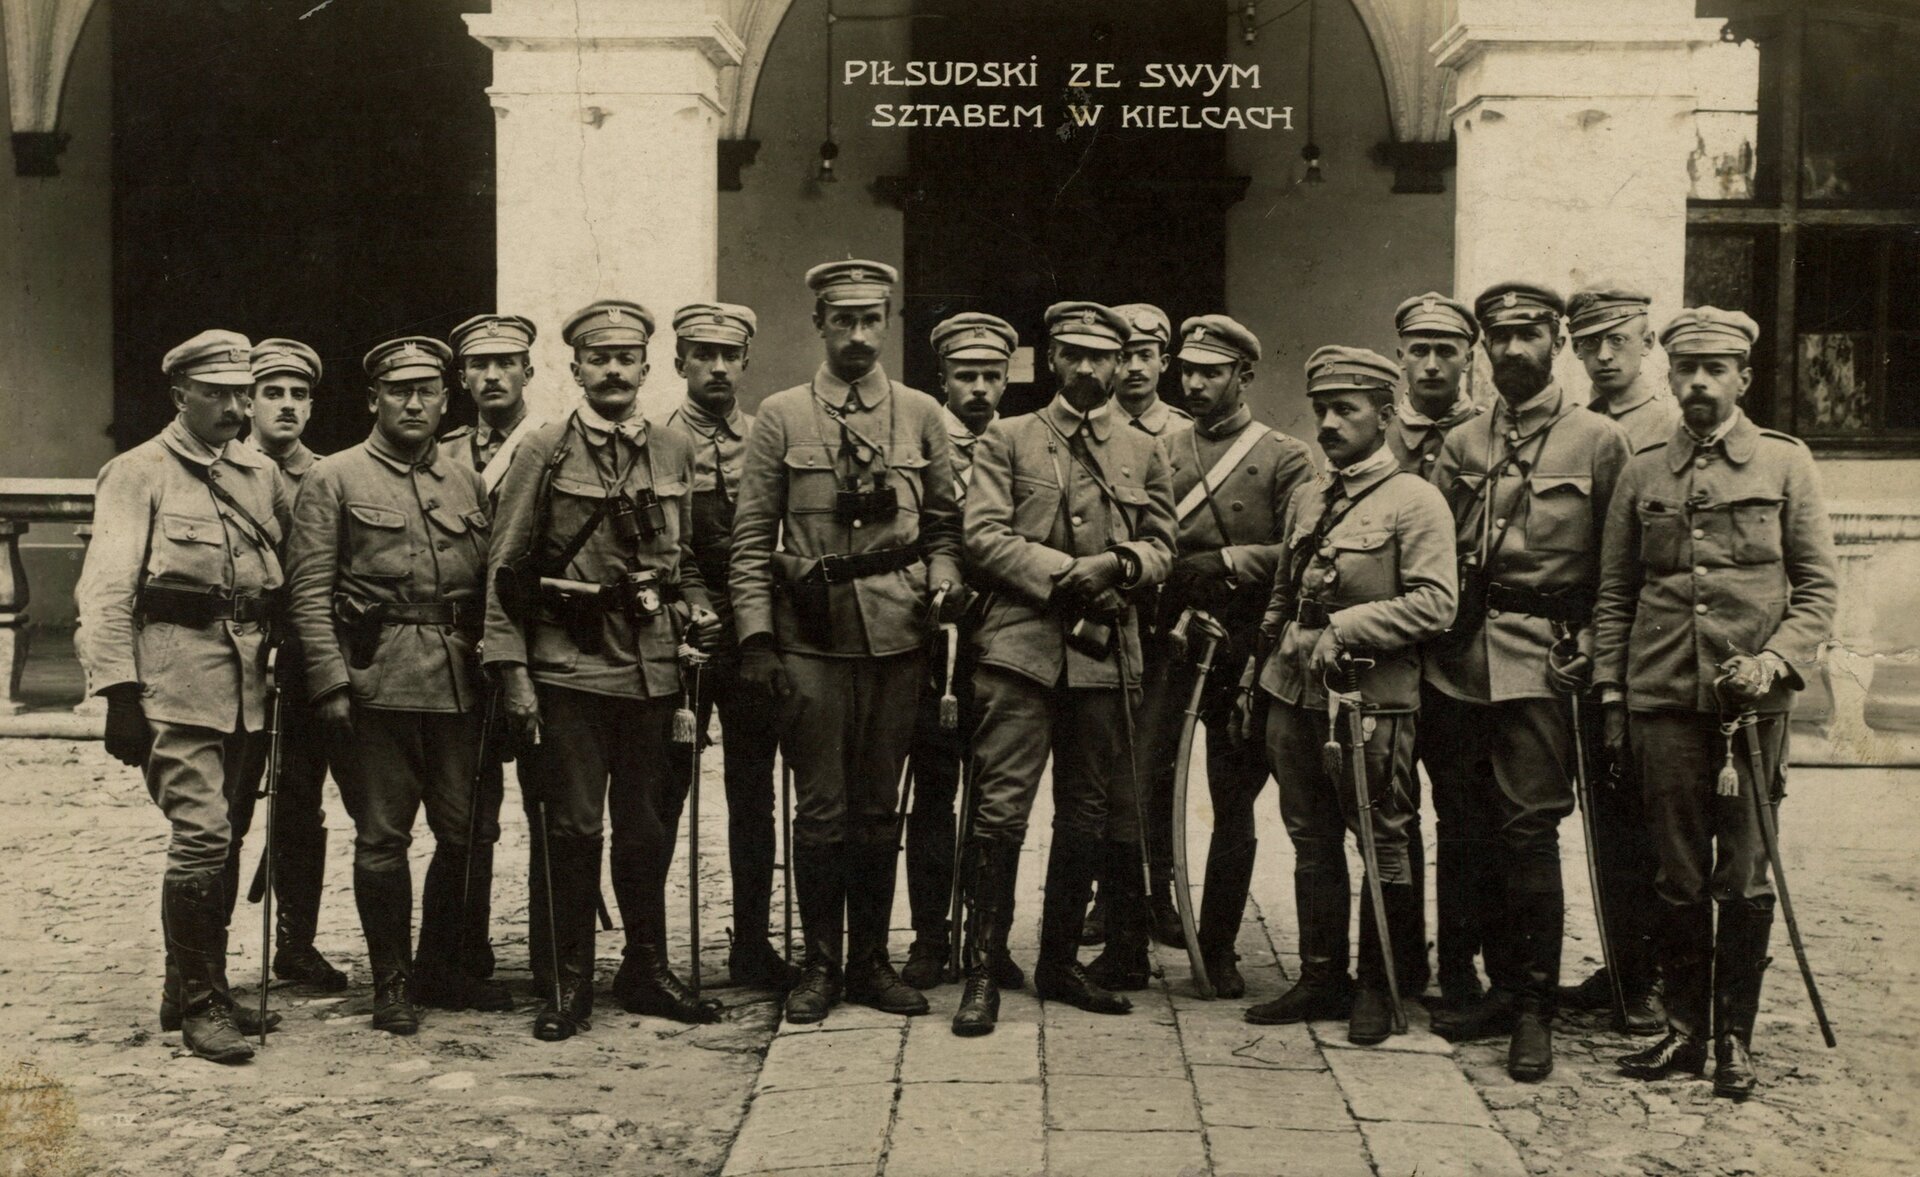 Pułkownik Józef Piłsudski (po środku) ze swoim sztabem przed Pałacem Gubernialnym w Kielcach, 1914 rok. Oddział 6 sierpnia 1914 roku wyruszył z Krakowa w kierunku Kielc, dotarł tam 12 sierpnia. Tego samego dnia doszło do pierwszych strać z wojskami carskimi. W co są uzbrojeni żołnierze widoczni na zdjęciu?